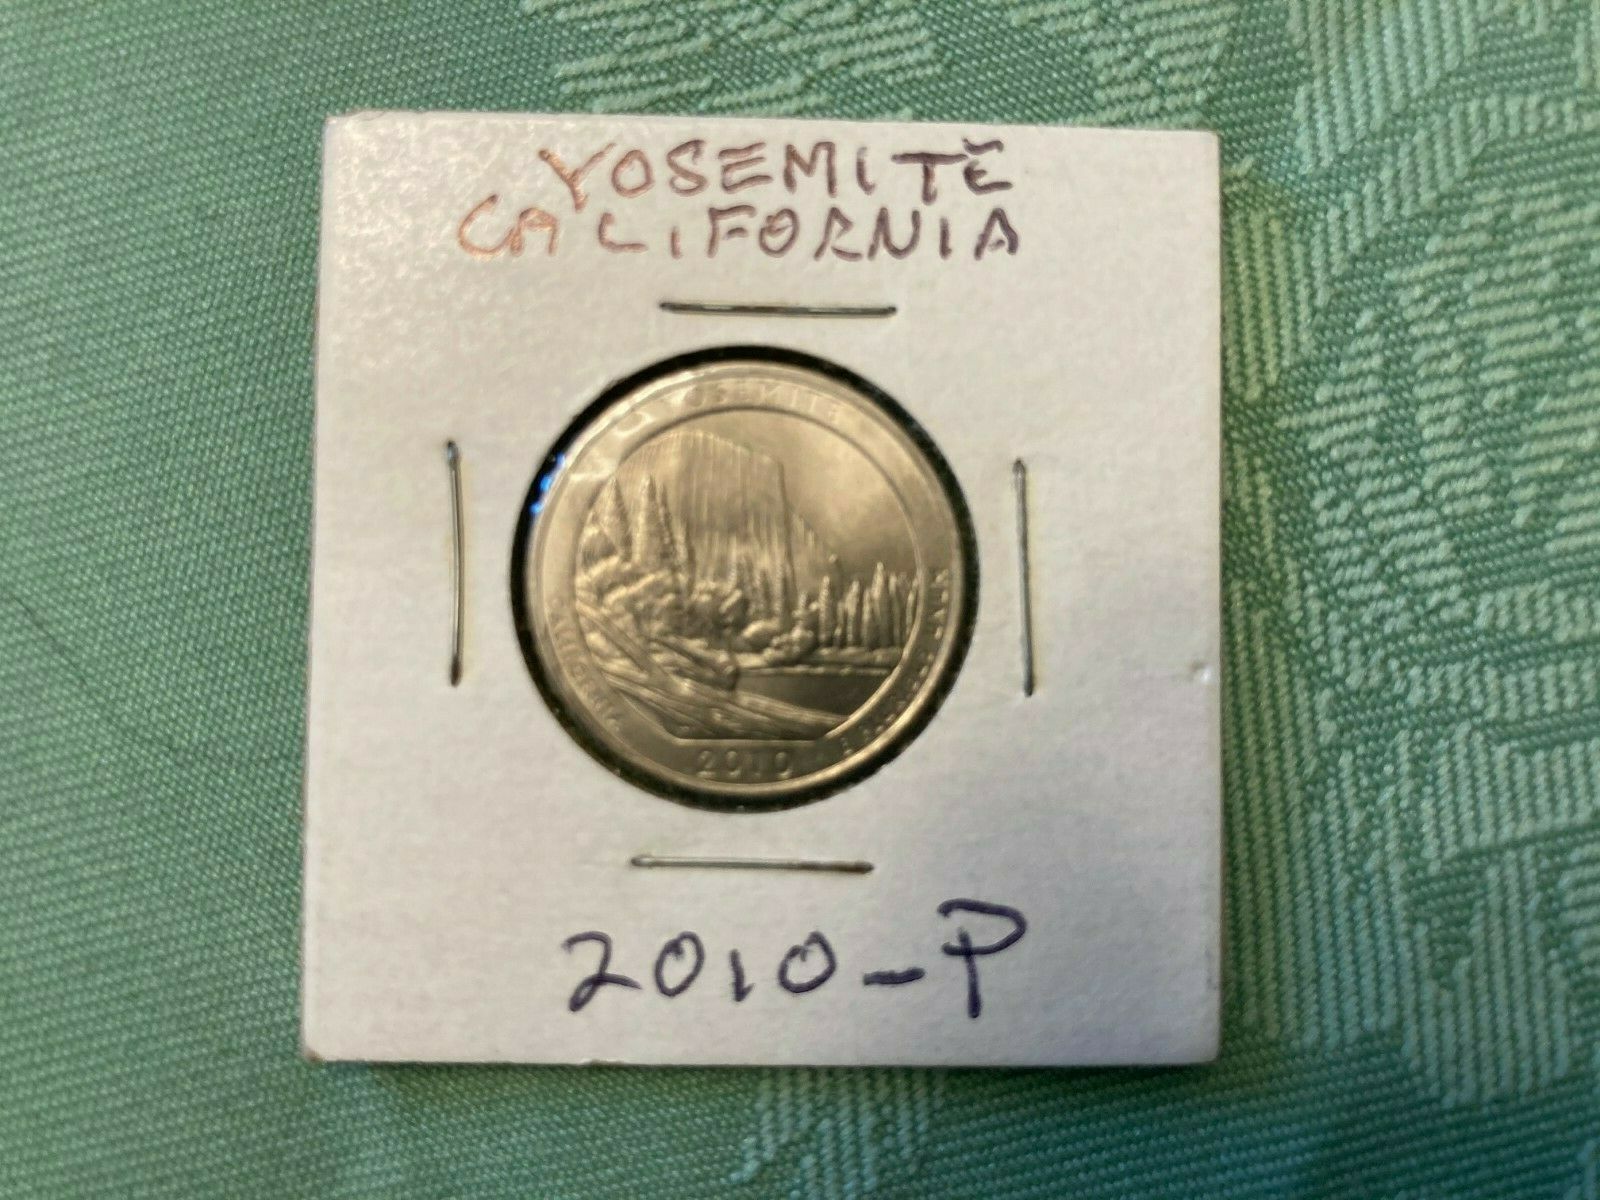 U.s. 2010-p Mint Atb Yosemite California Quarter In A Mylar Coin Flip